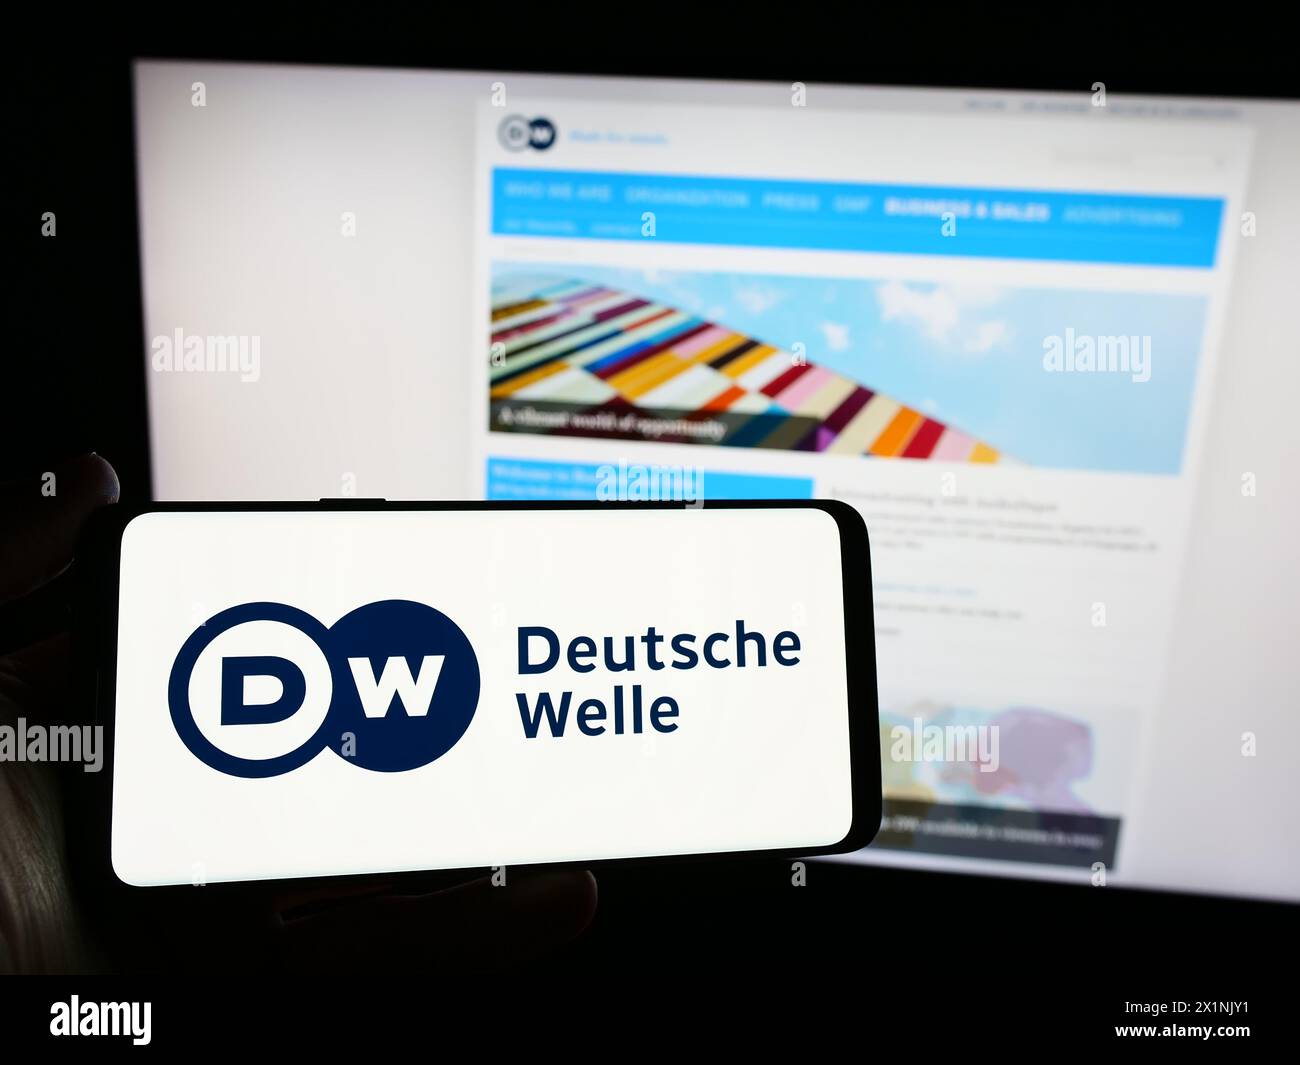 Persona che possiede uno smartphone con il logo dell'emittente statale tedesca Deutsche Welle (DW) davanti al sito web. Mettere a fuoco il display del telefono. Foto Stock